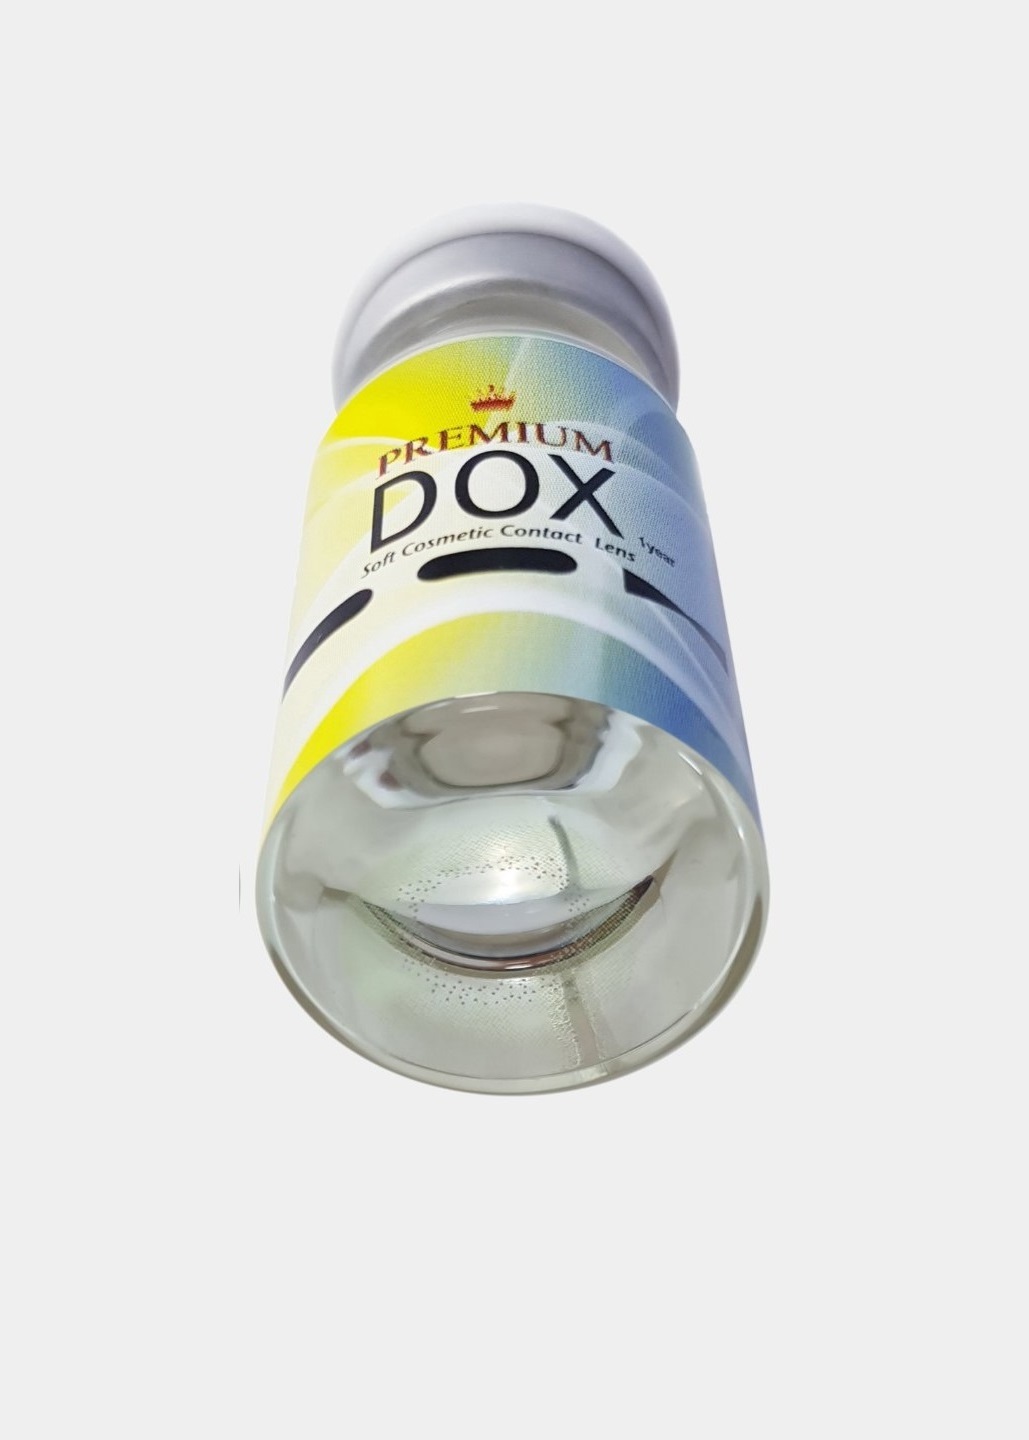 Цветные контактные линзы DOX Kiwi GREEN -1,0 BC 8,6 DIA 14,2, 1 линза